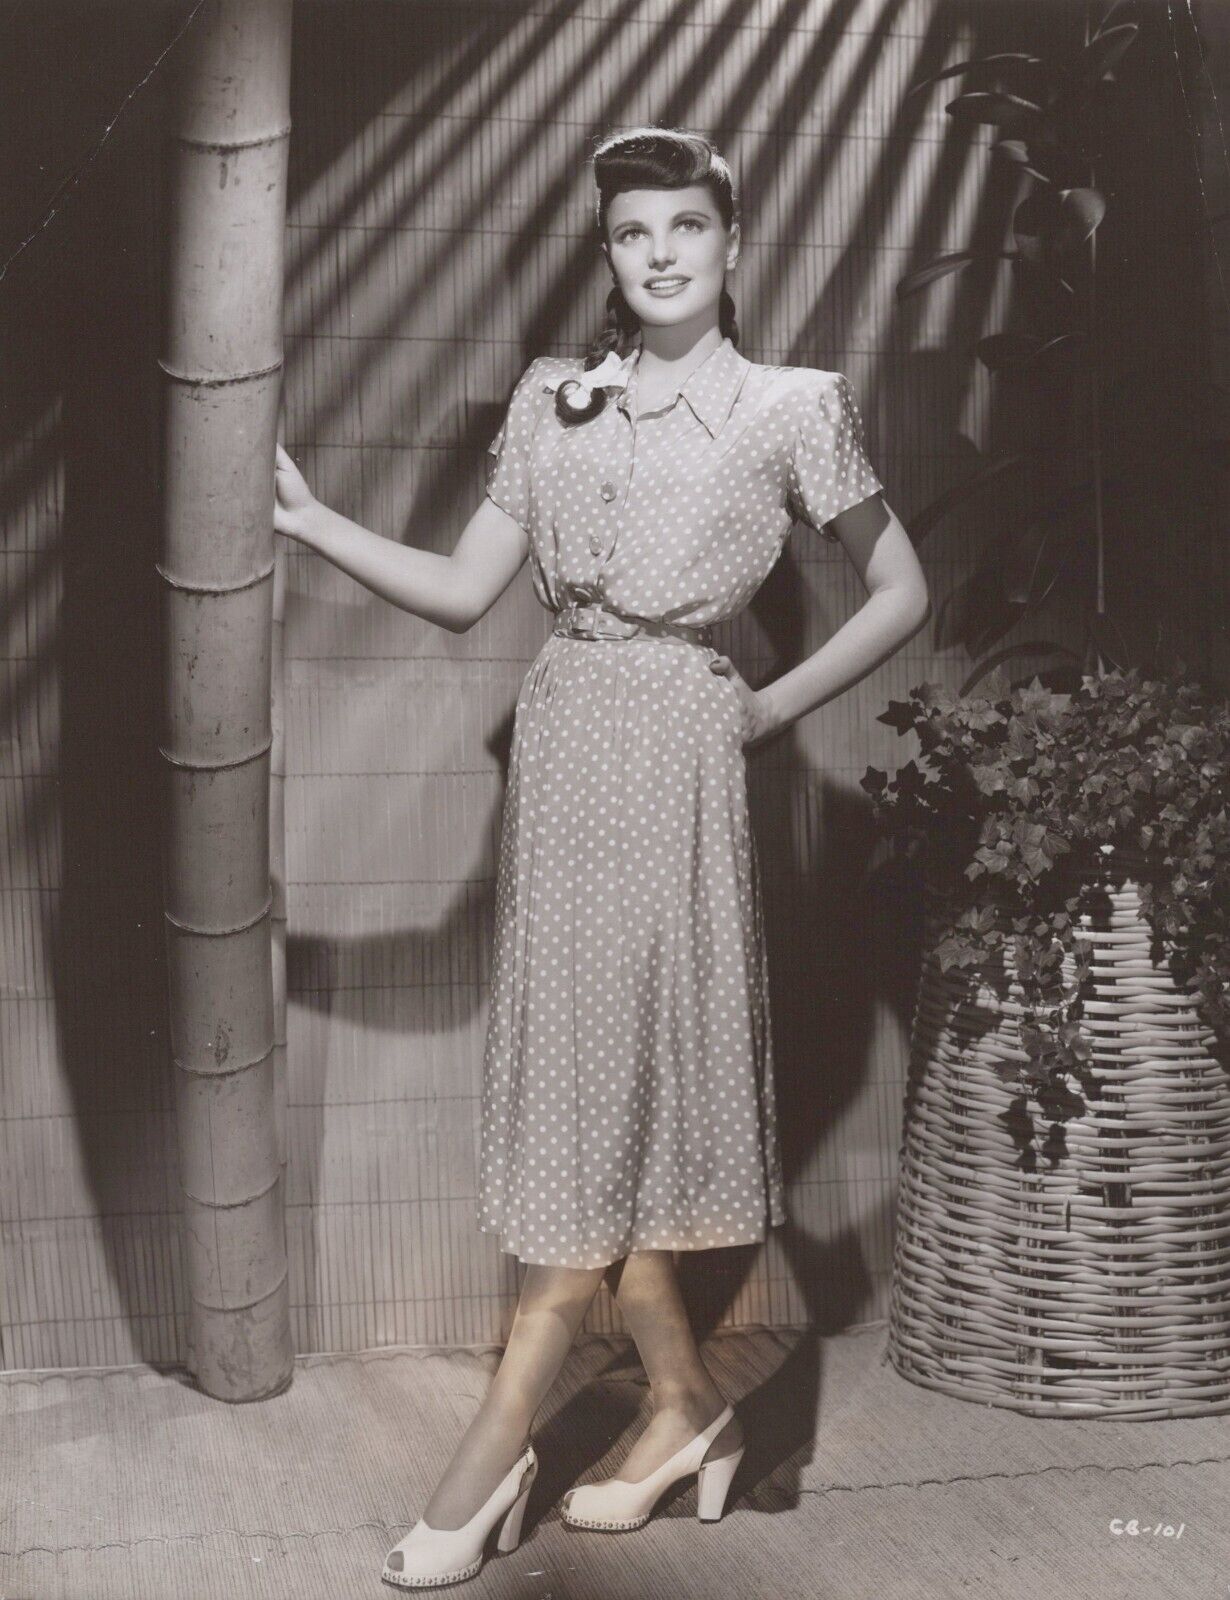 Geraldine Brooks (1940s) 🎬⭐ Hollywood beauty - Exotic Stylish Pose Photo K 162